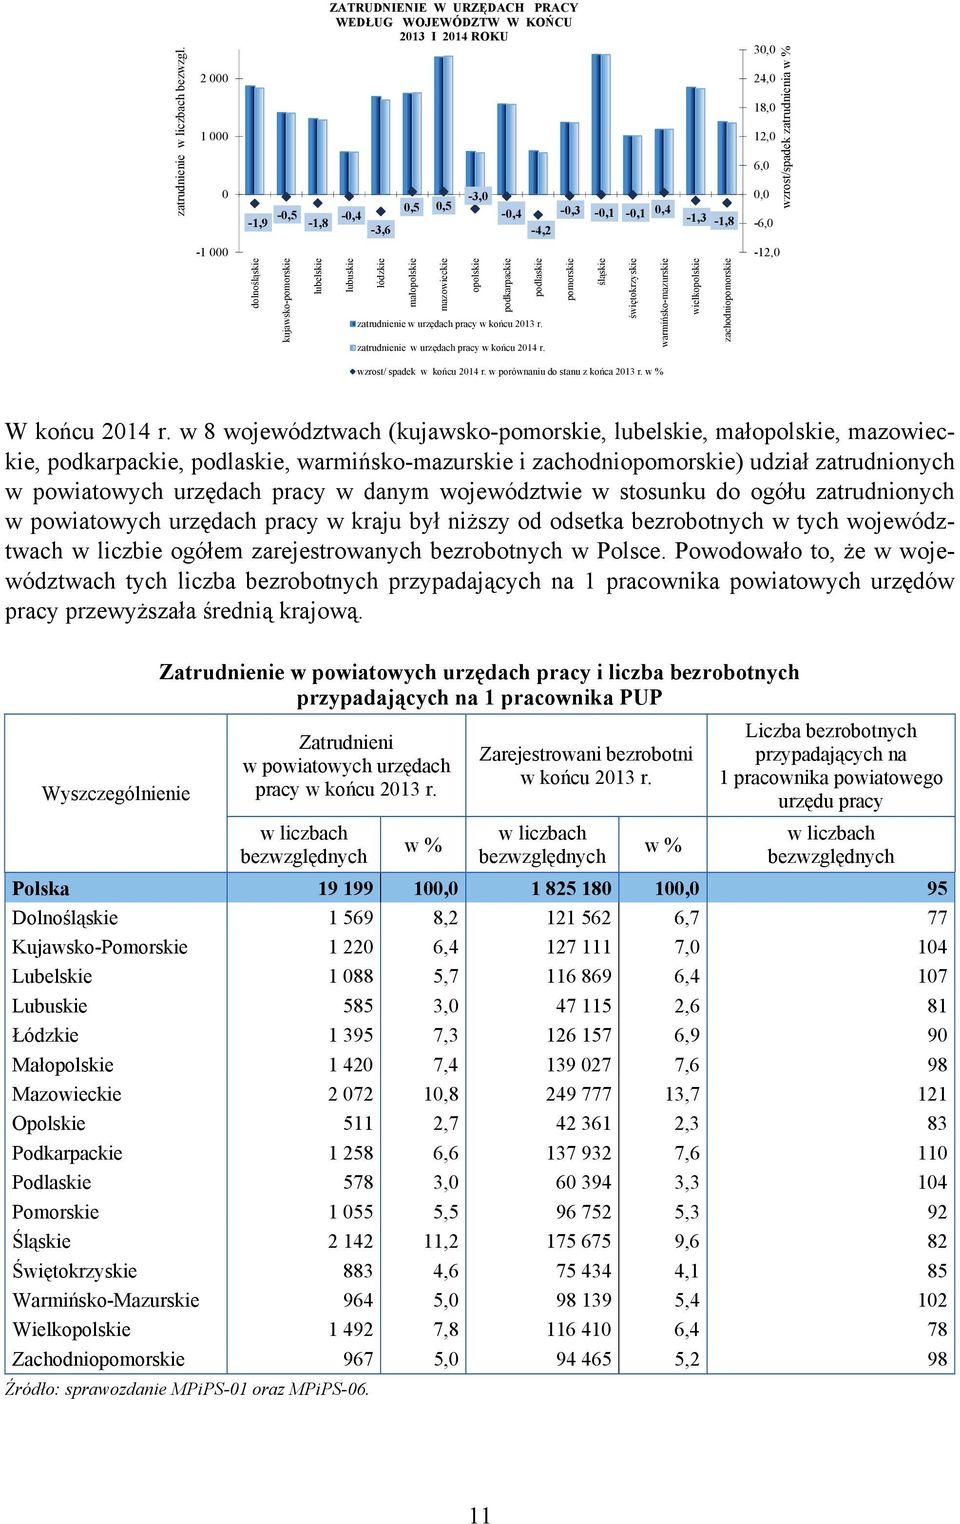 zatrudnienia w %. -1 000 dolnośląskie kujawsko-pomorskie lubelskie lubuskie łódzkie małopolskie mazowieckie opolskie podkarpackie podlaskie zatrudnienie w urzędach pracy w końcu 2013 r.